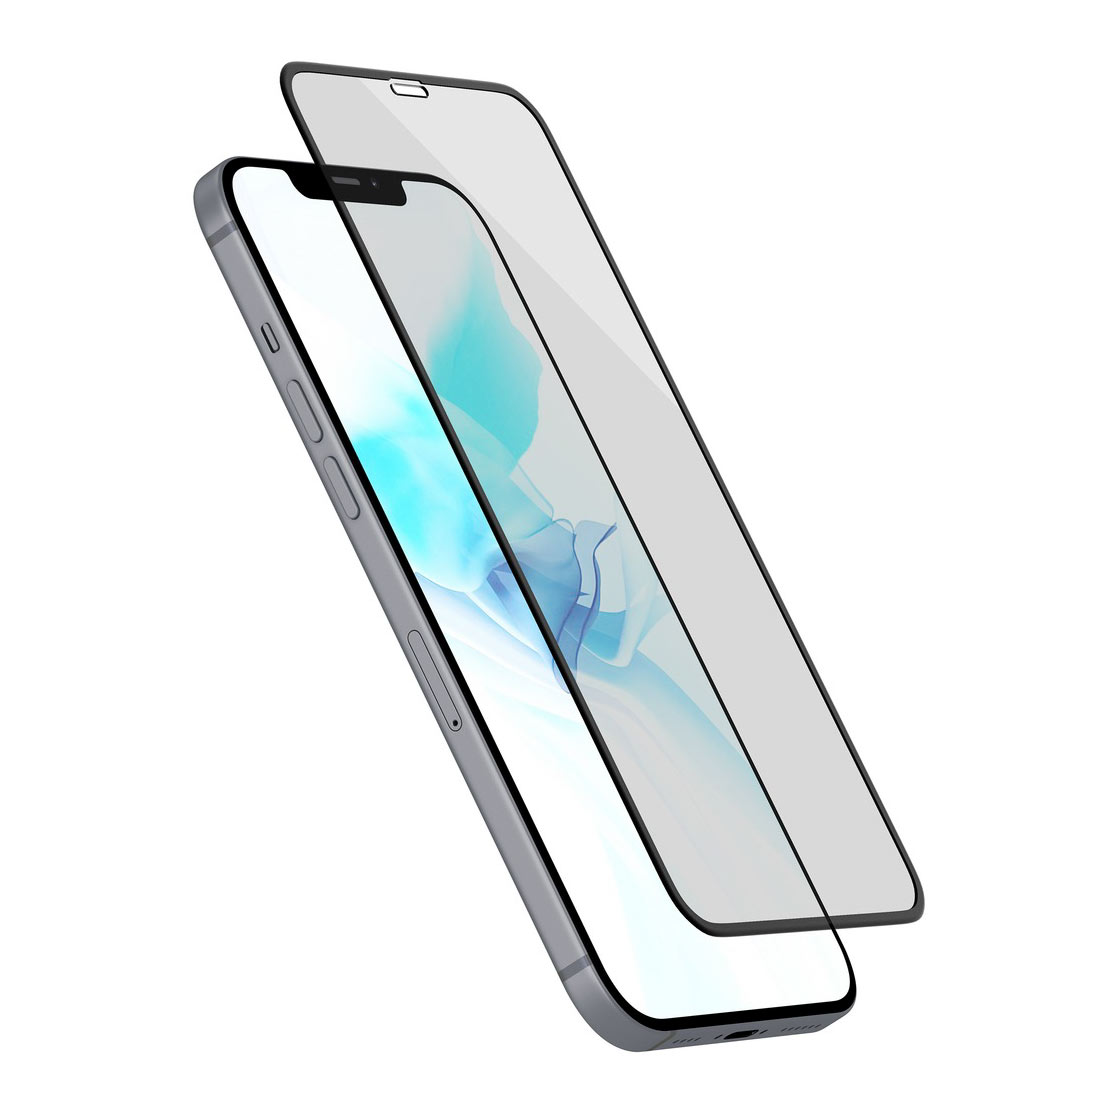 Защитное стекло uBear Extreme 3D для Apple iPhone 12 mini, чёрная рамка, цвет черный - фото 2